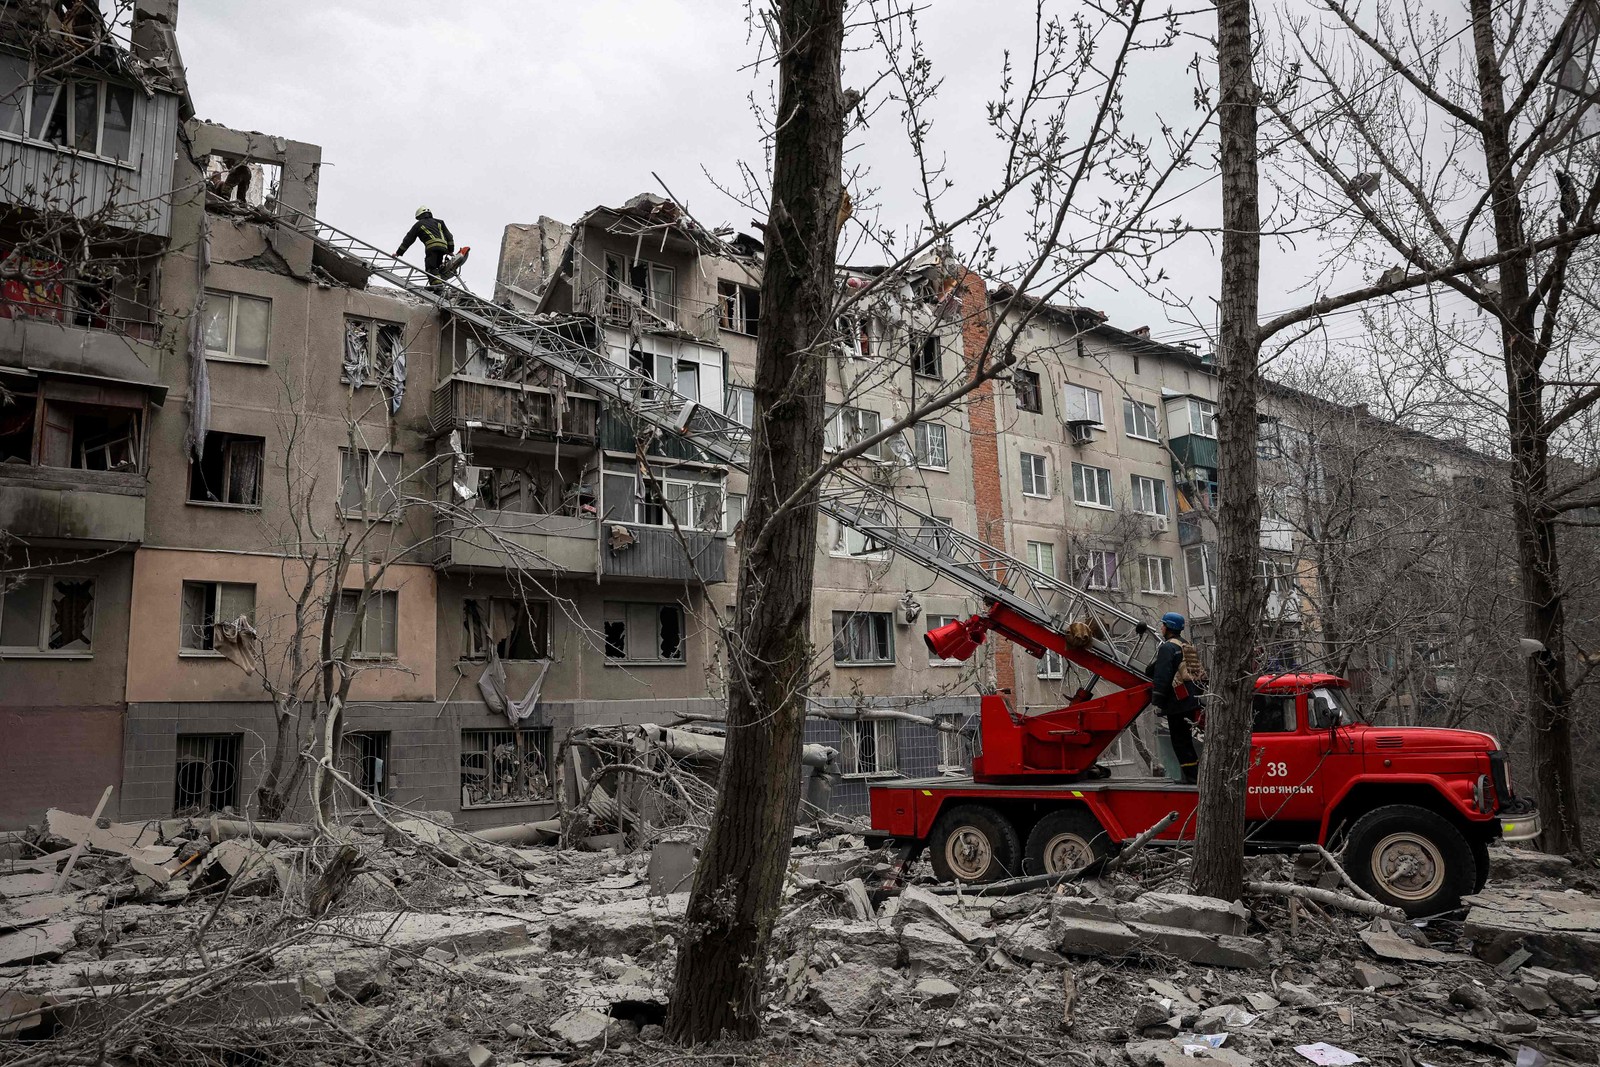 Jornalistas da AFP viram equipes de resgate cavando em busca de sobreviventes no último andar de um prédio residencial e fumaça negra saindo de casas em chamas do outro lado da rua — Foto: Anatolii Stepanov / AFP